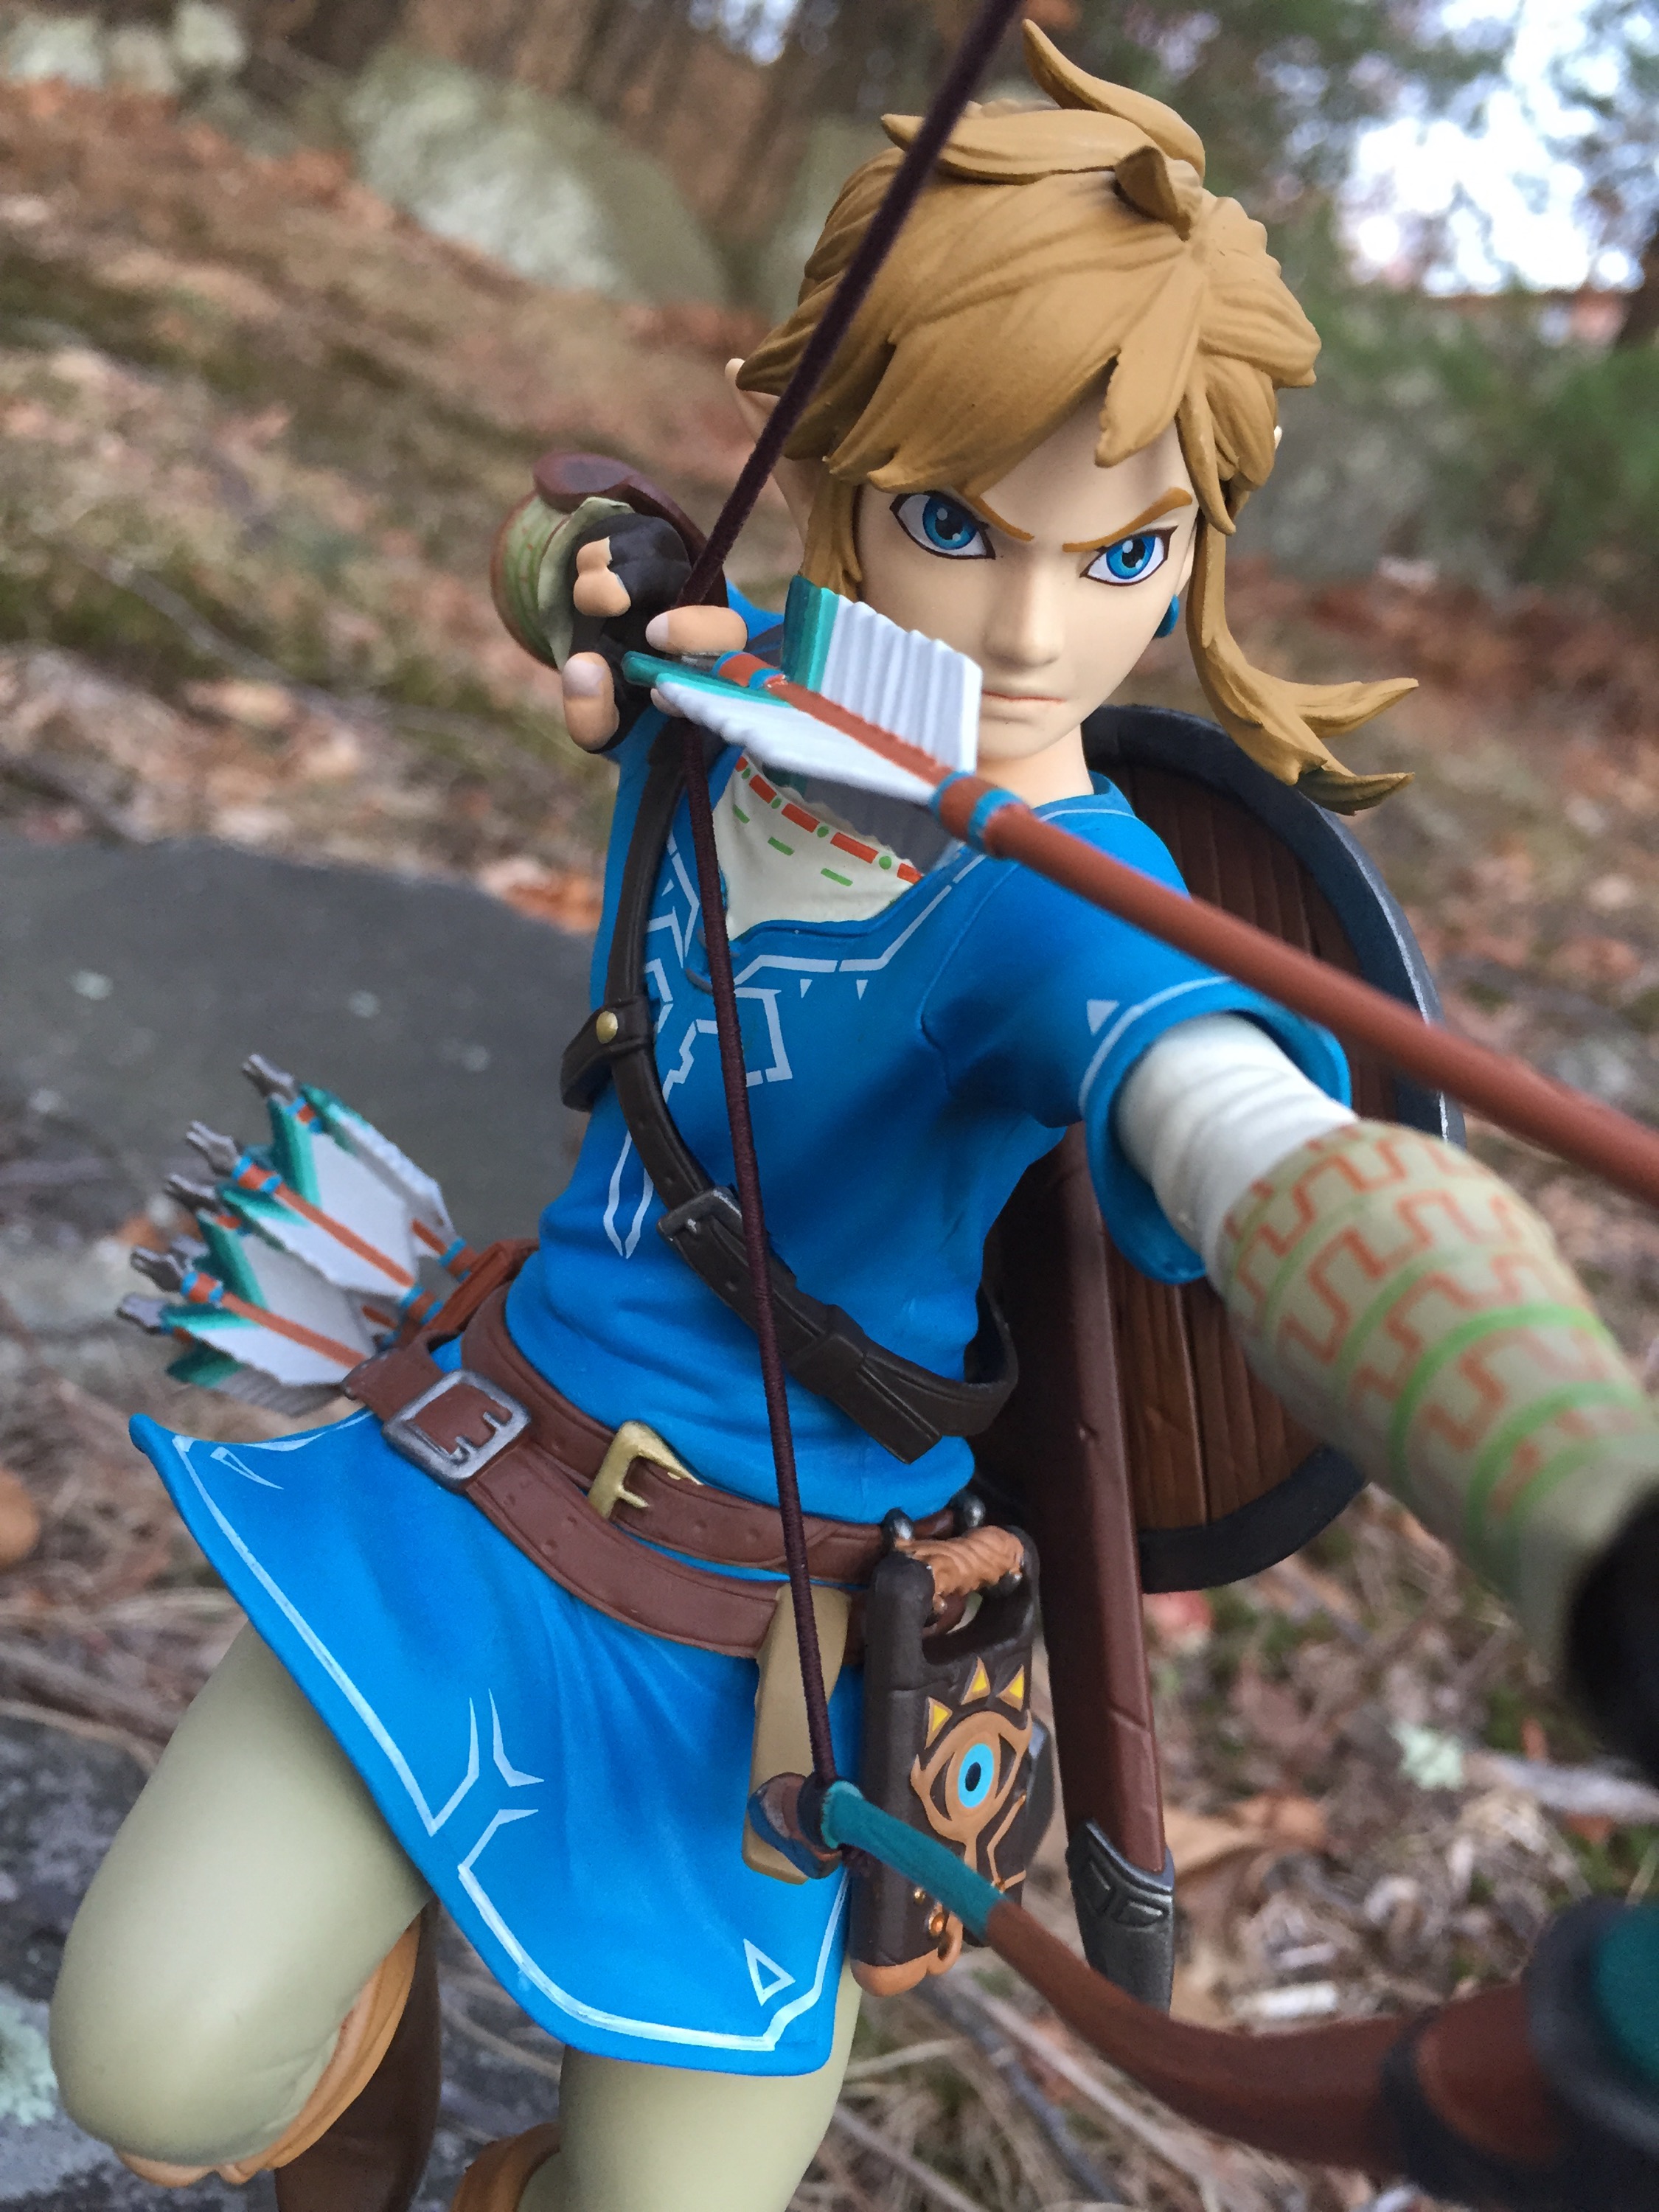 Legend Of Zelda Link Deluxe Edition Action Figure The Legend Of Zelda Link Cute Figure Toy Game